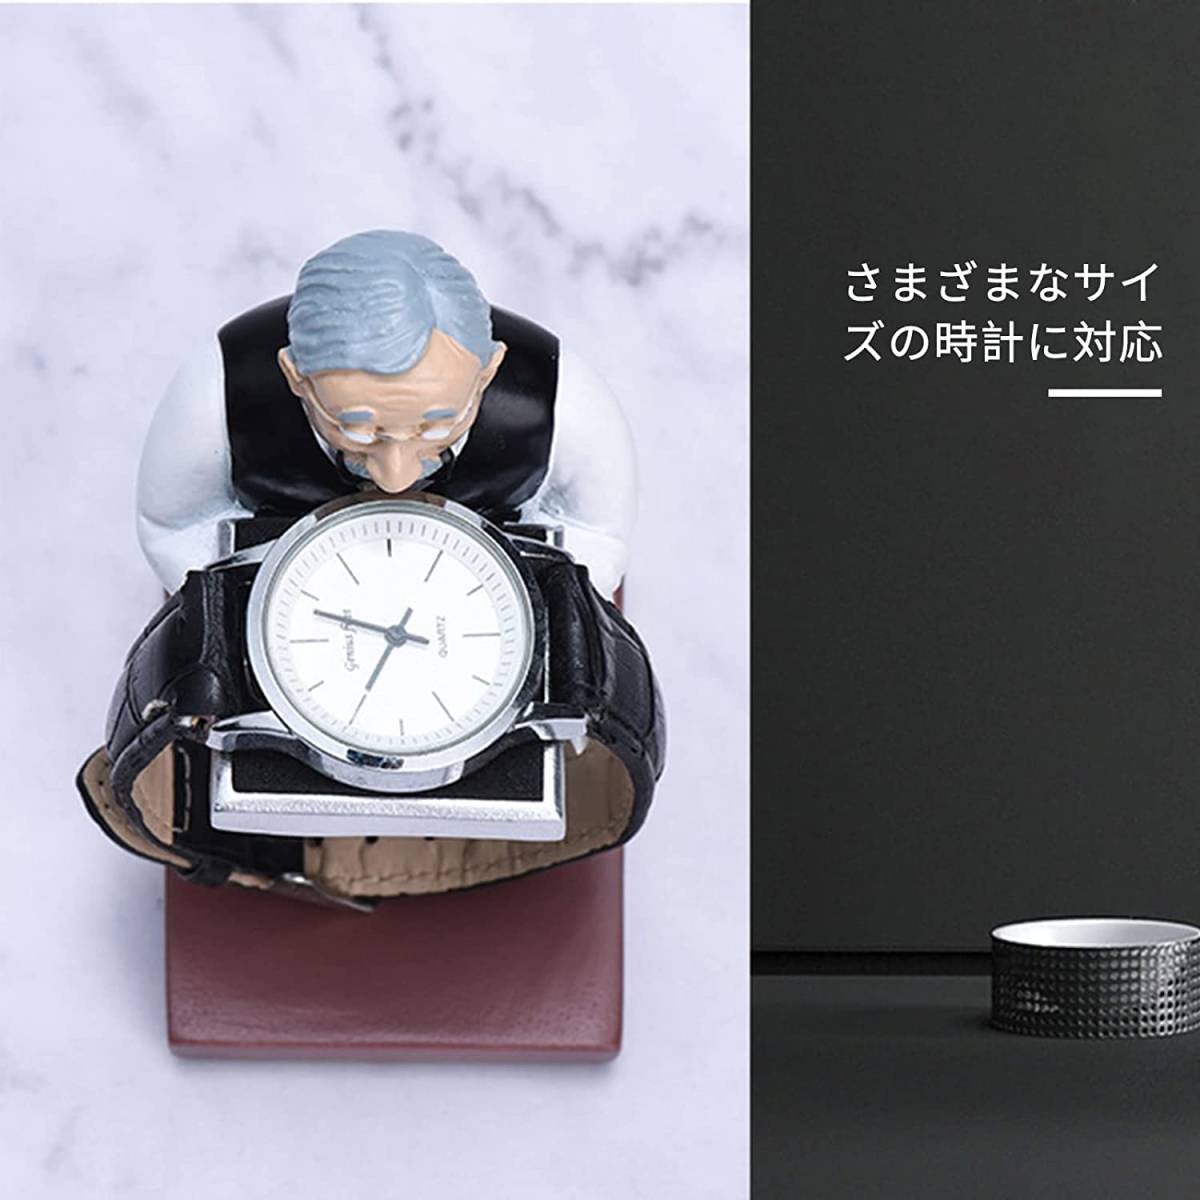 可愛い家政婦型の腕時計スタンド ウォッチスタンド ジュエリートレイ アクセサリー置き ディスプレイ おしゃれ インテリア腕時計スタンド